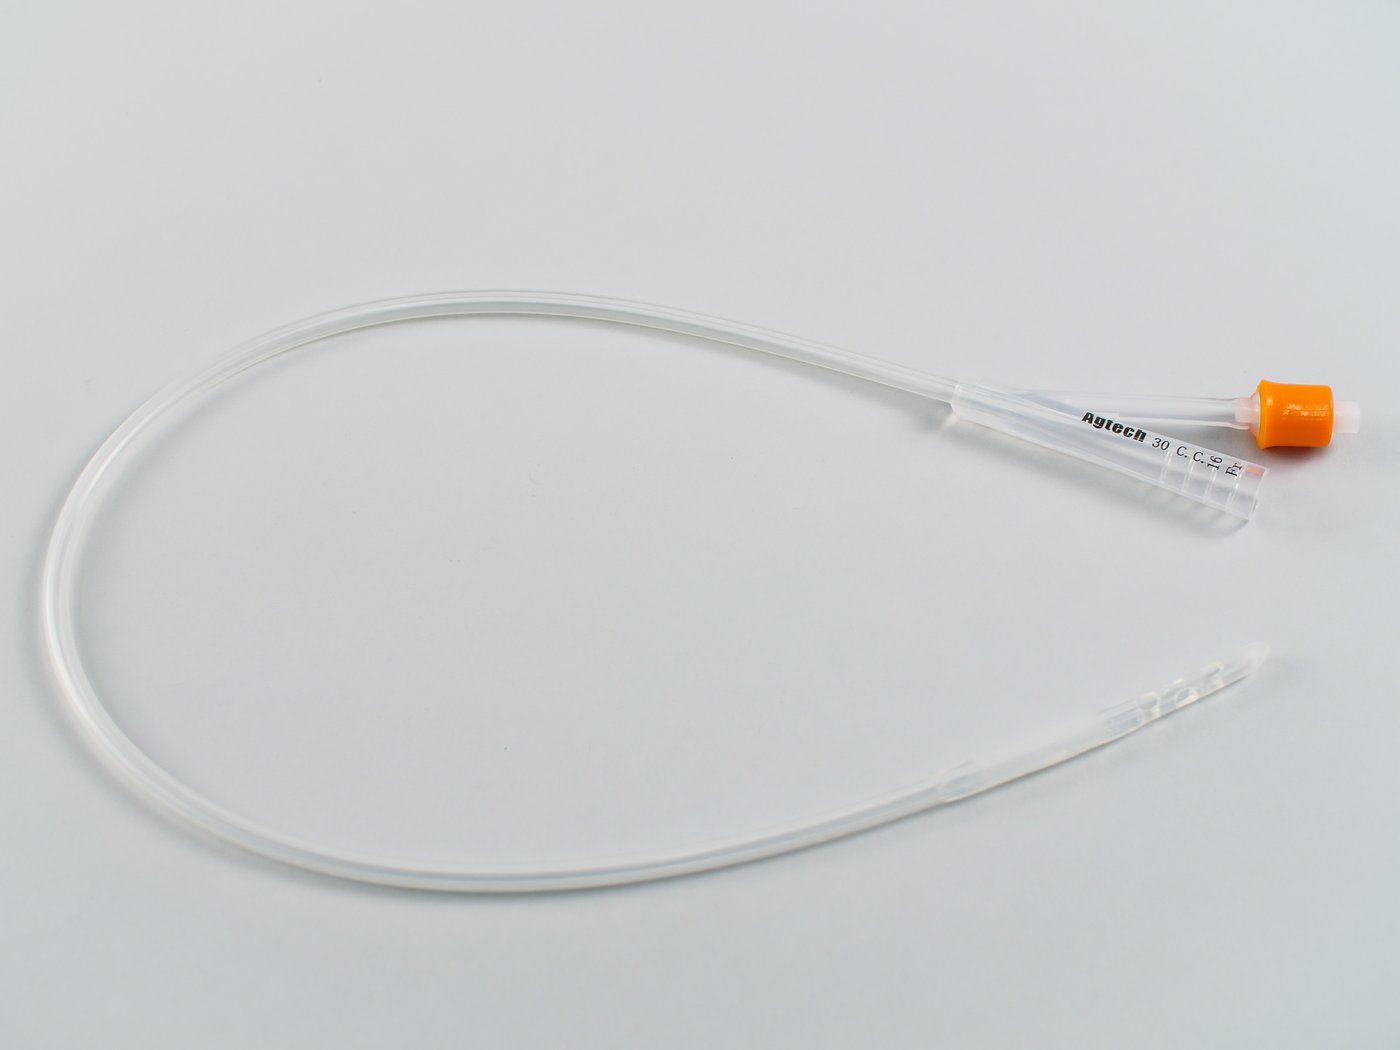 40045 vortech siliconen catheter voor runder et 16fr 30cc ballon 584cm e101